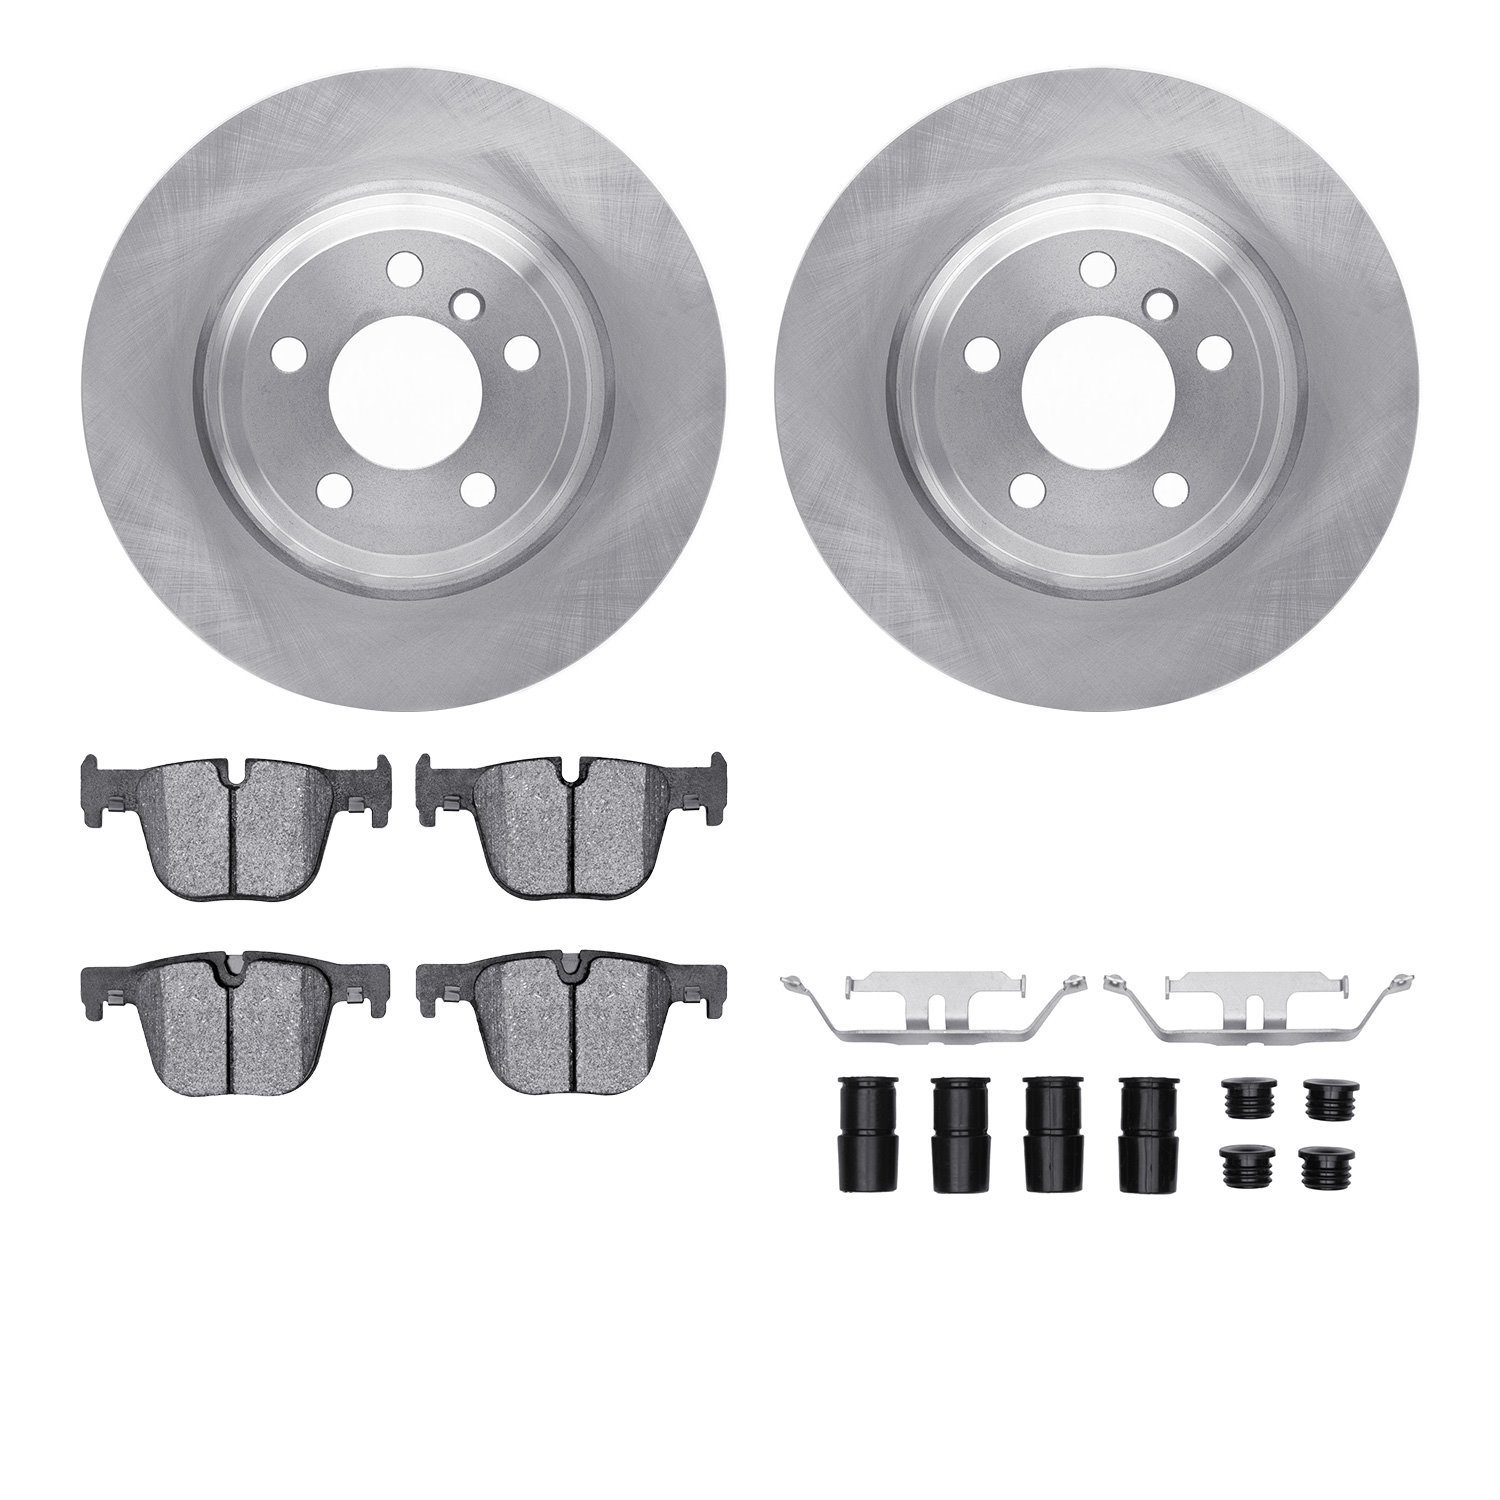 6612-31388 Brake Rotors w/5000 Euro Ceramic Brake Pads Kit with Hardware, 2014-2015 BMW, Position: Rear